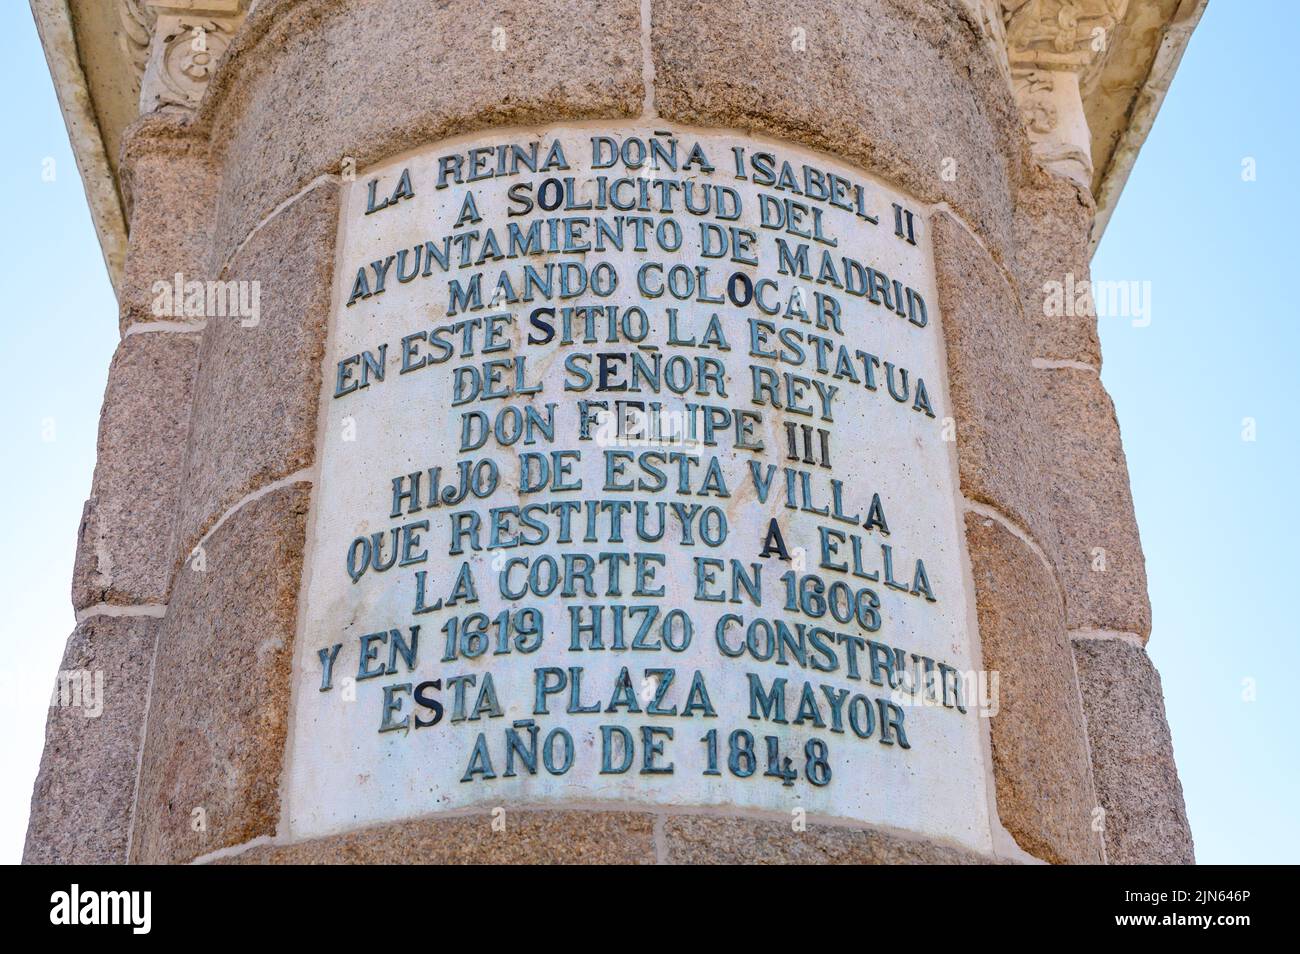 Placa con información en el monumento a Don Felipe III en la Plaza Mayor. Foto de stock